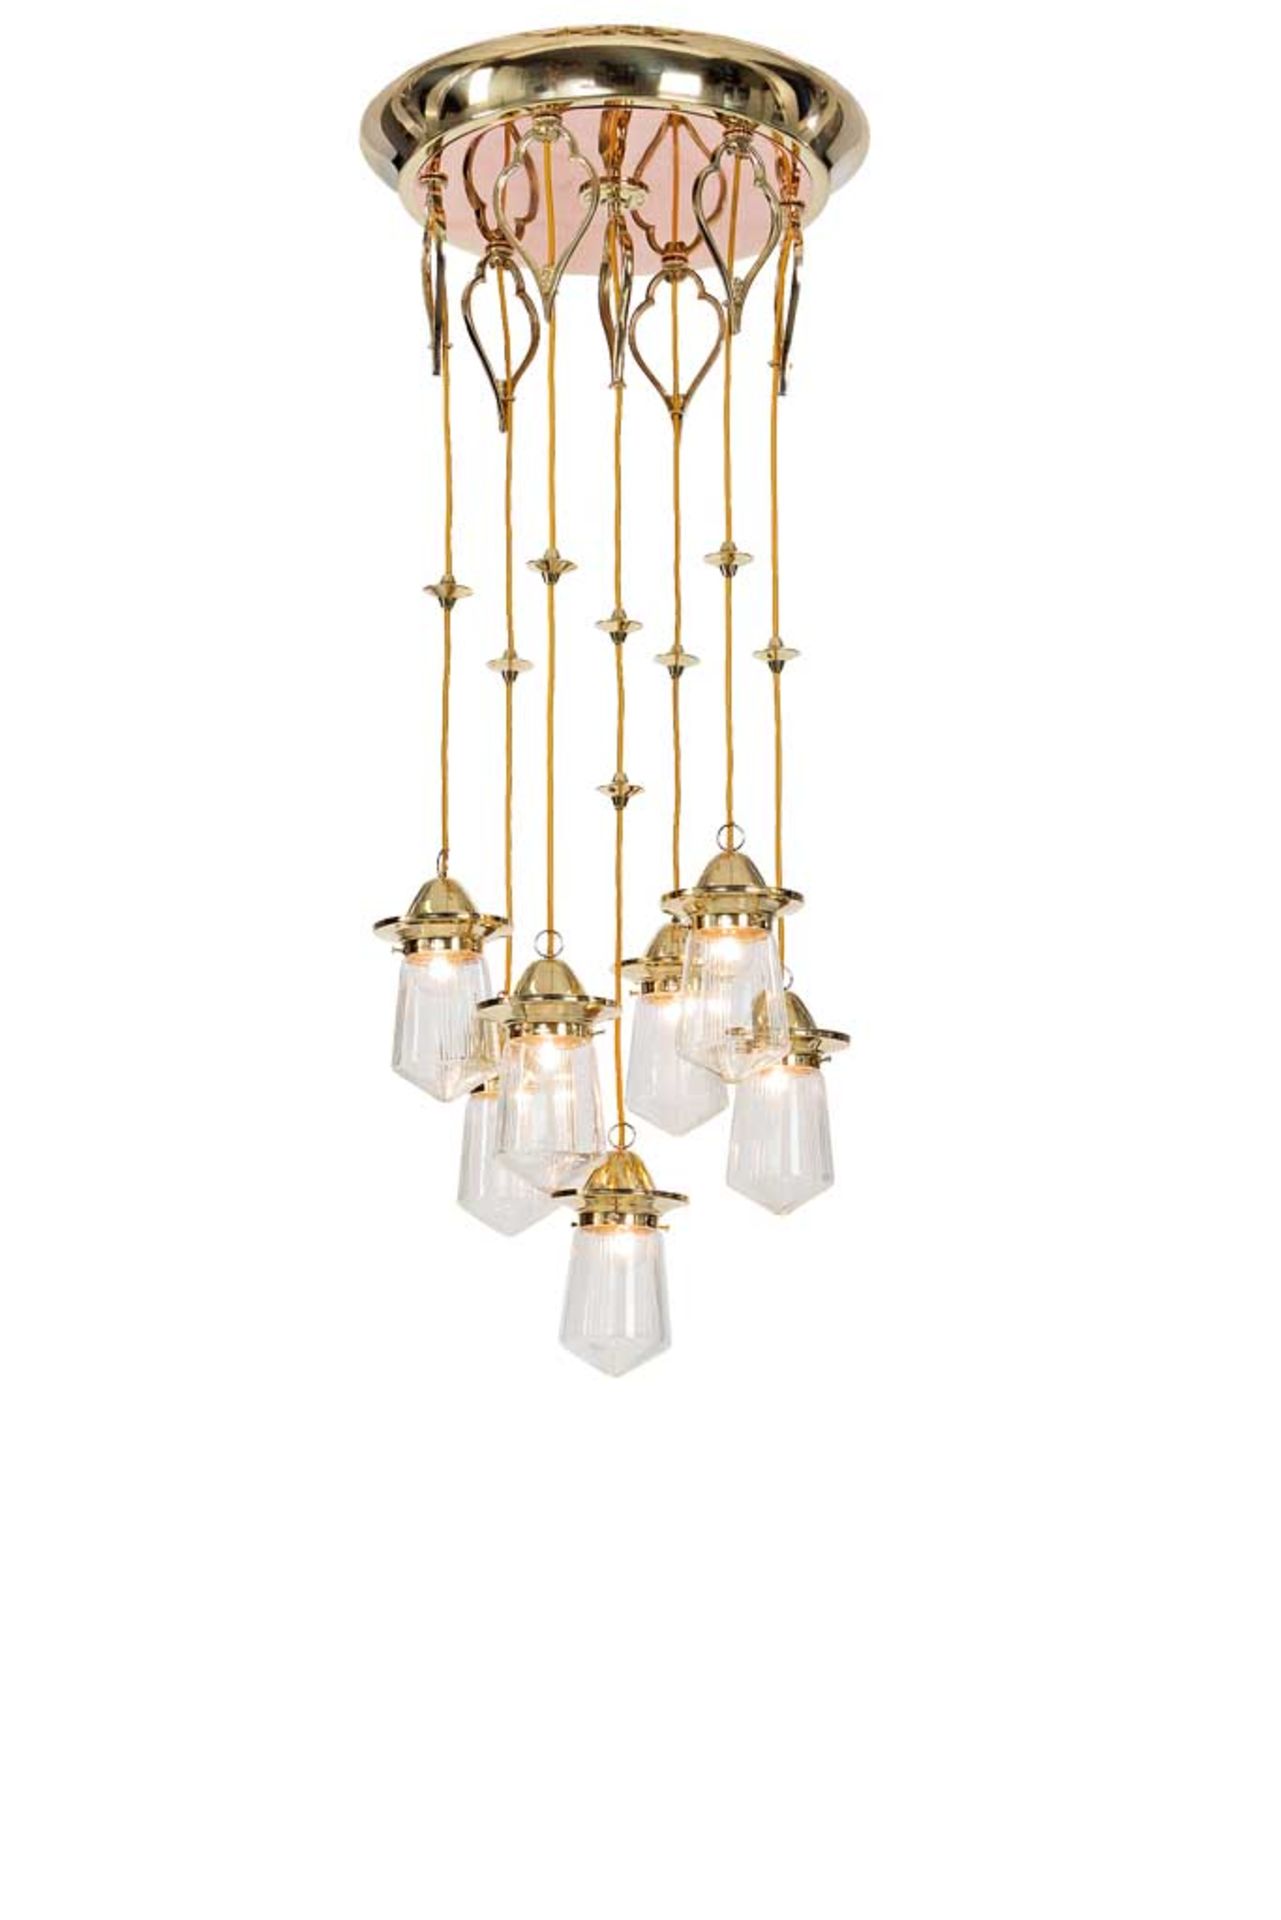 Elegante Jugendstil-Salonlampe mit sechs hängenden Glasschirmen, an großen Plafond montiert.